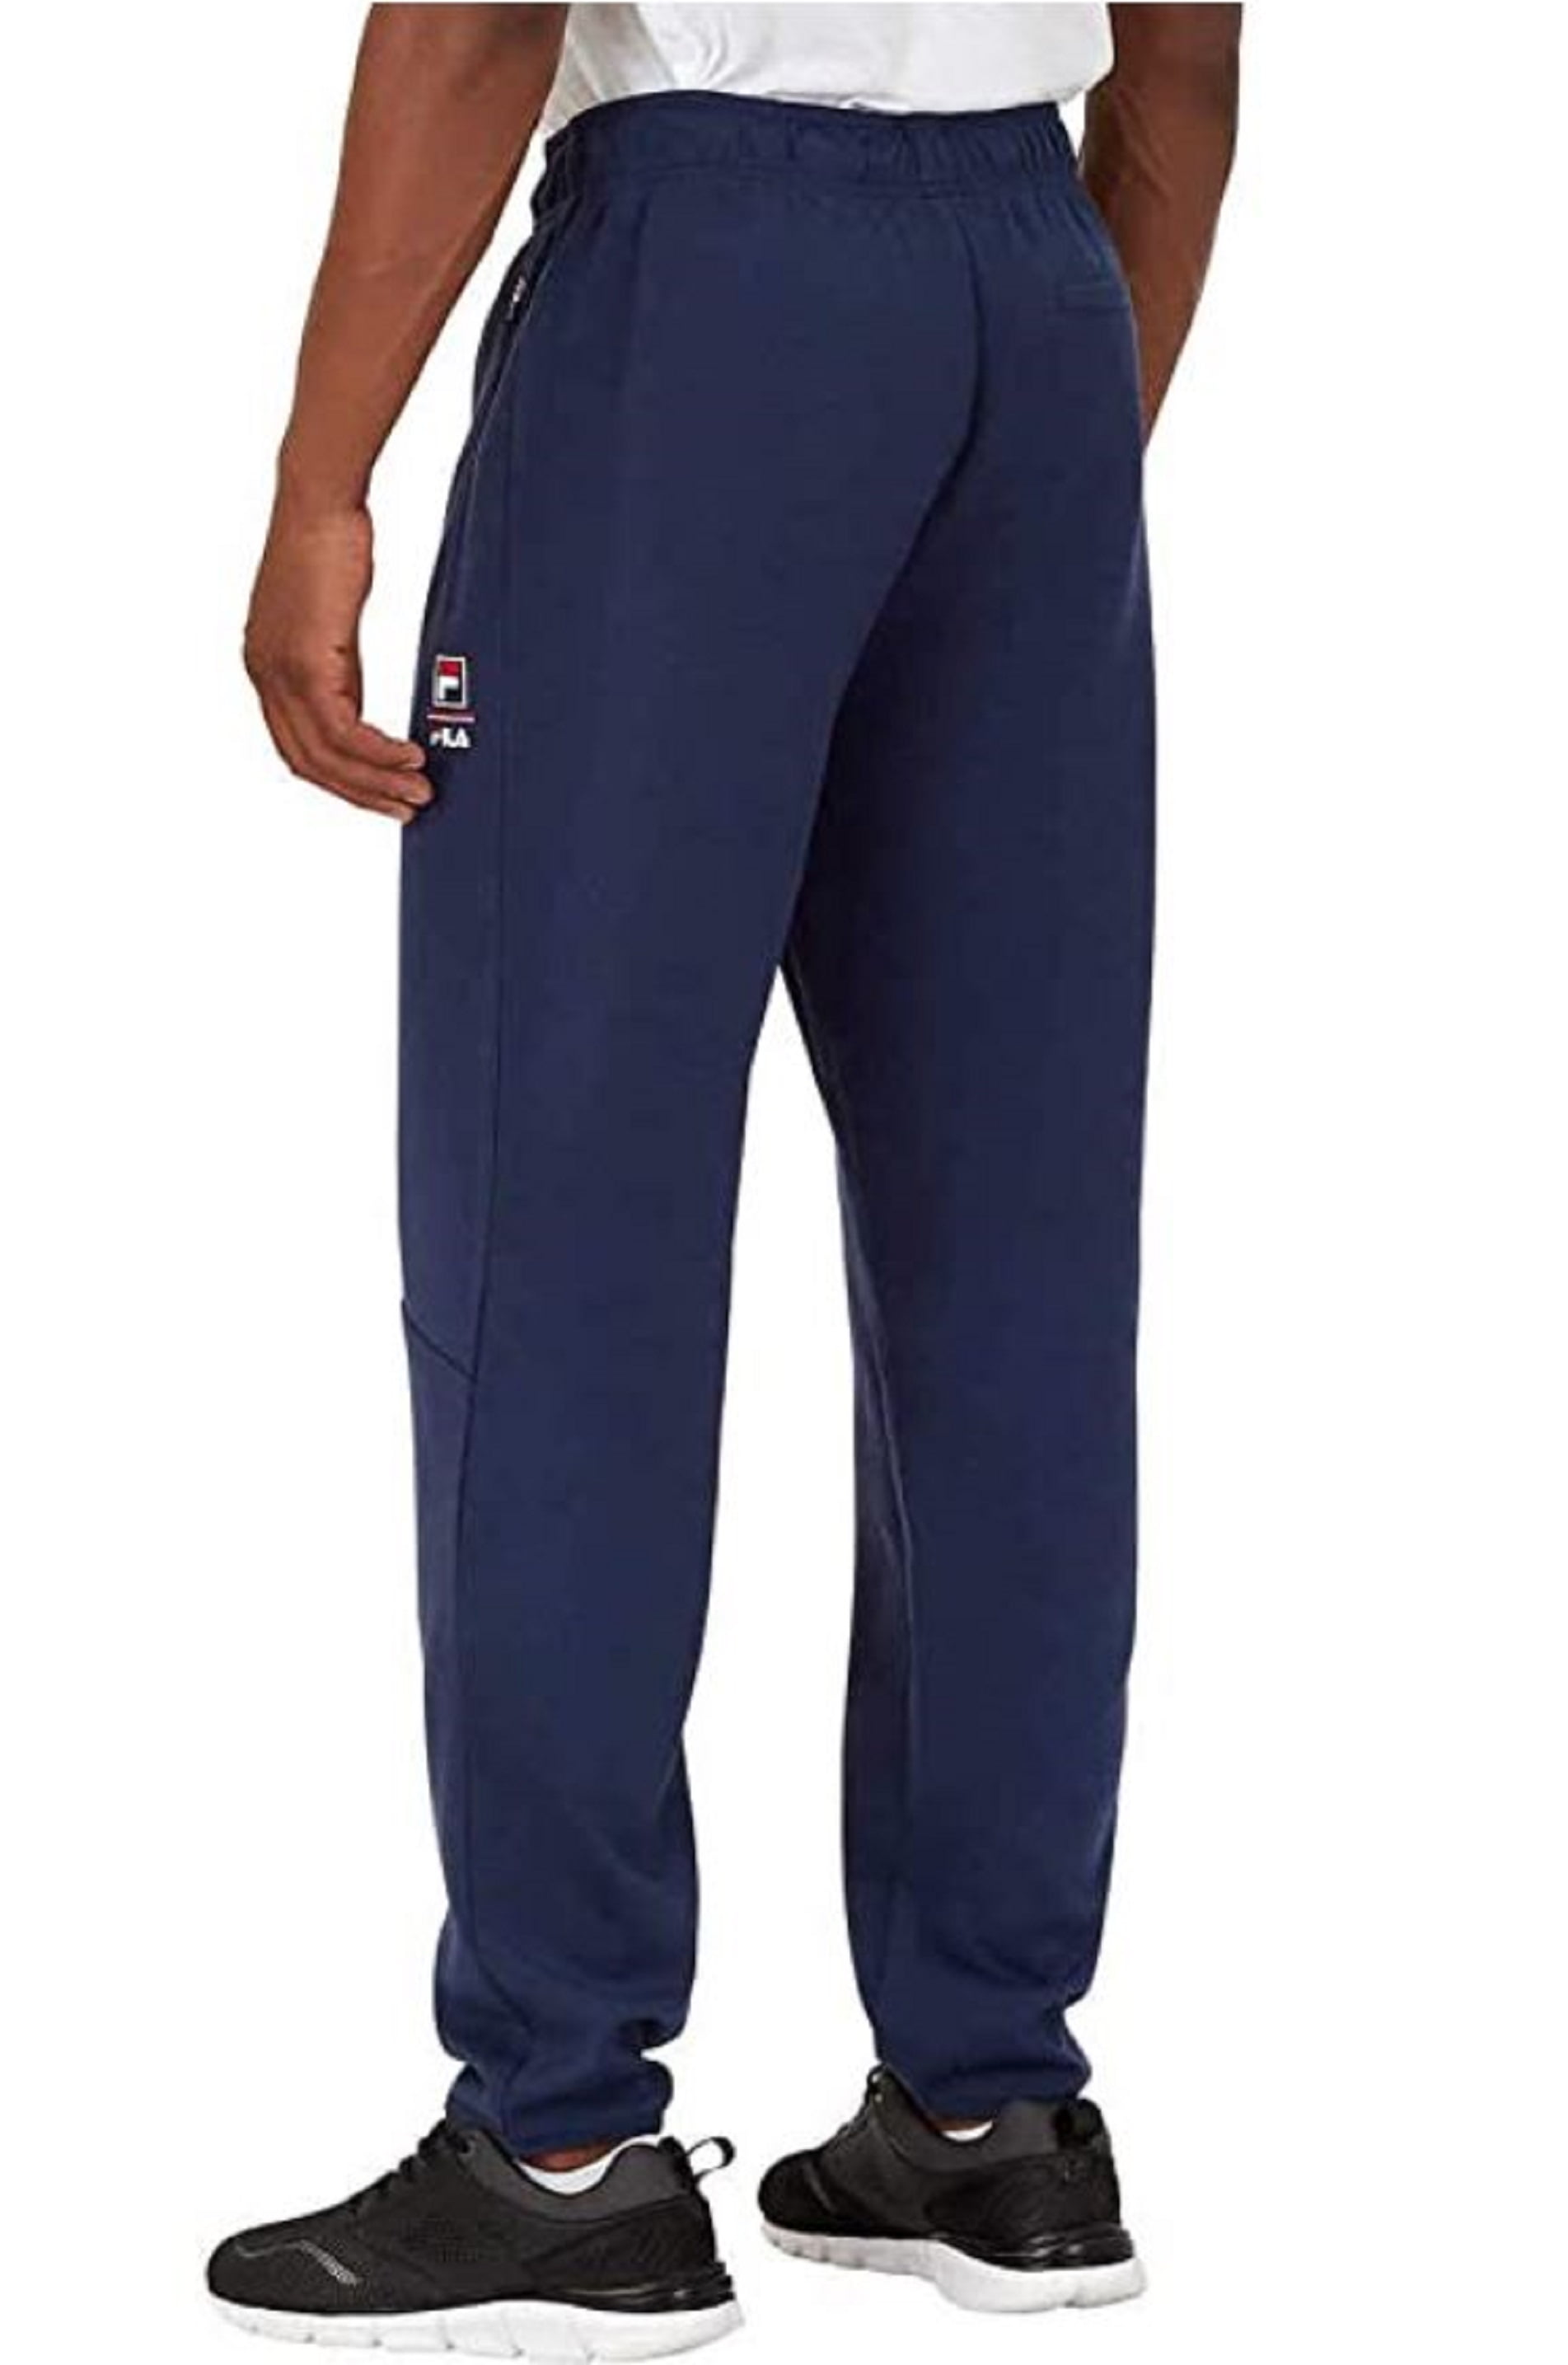 Fila Mens Active Pants Small) - Walmart.com